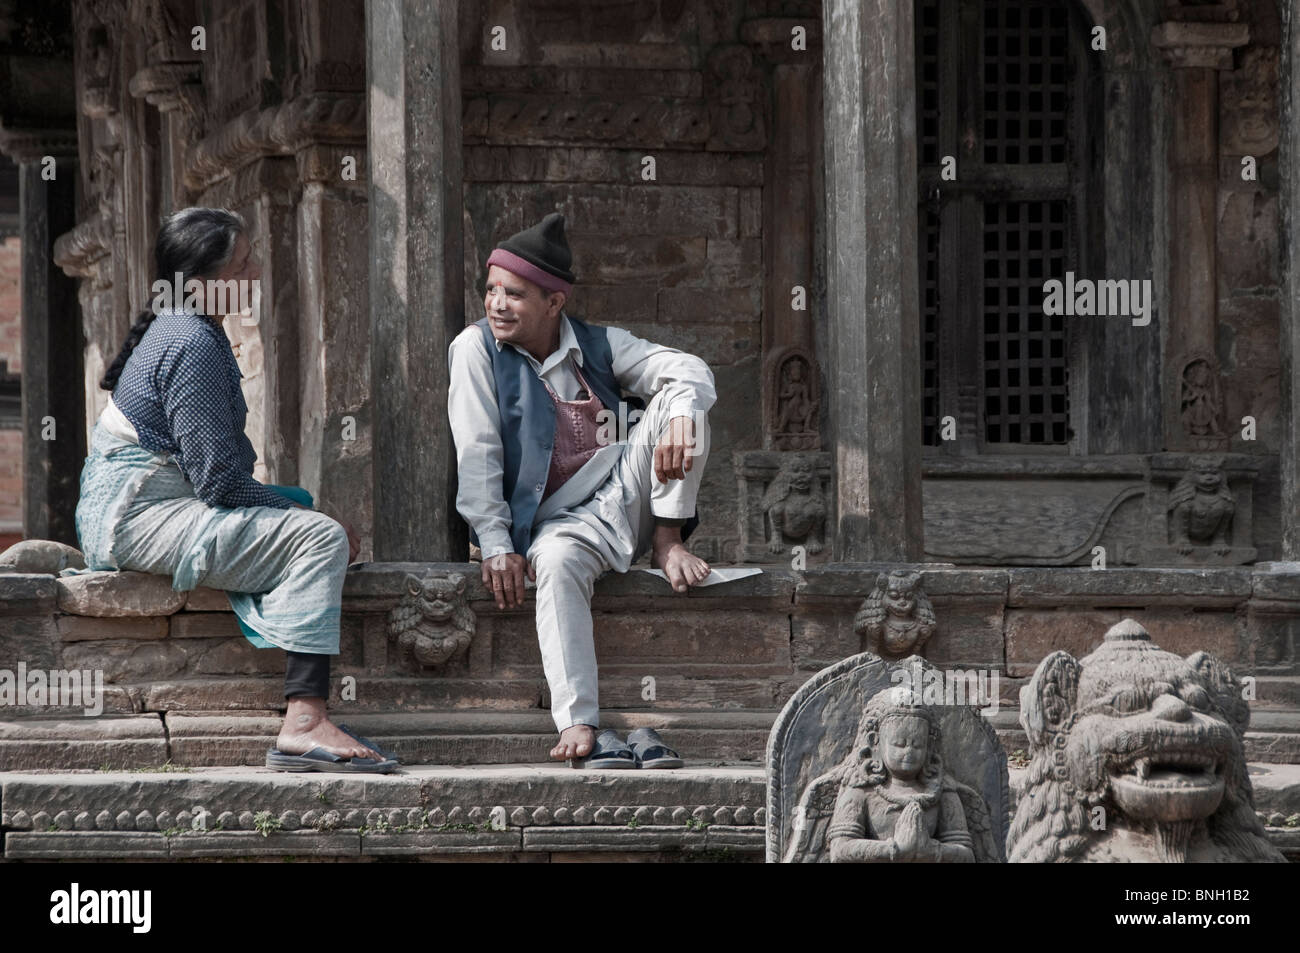 Locals chatting, Bhaktapur, Nepal Stock Photo